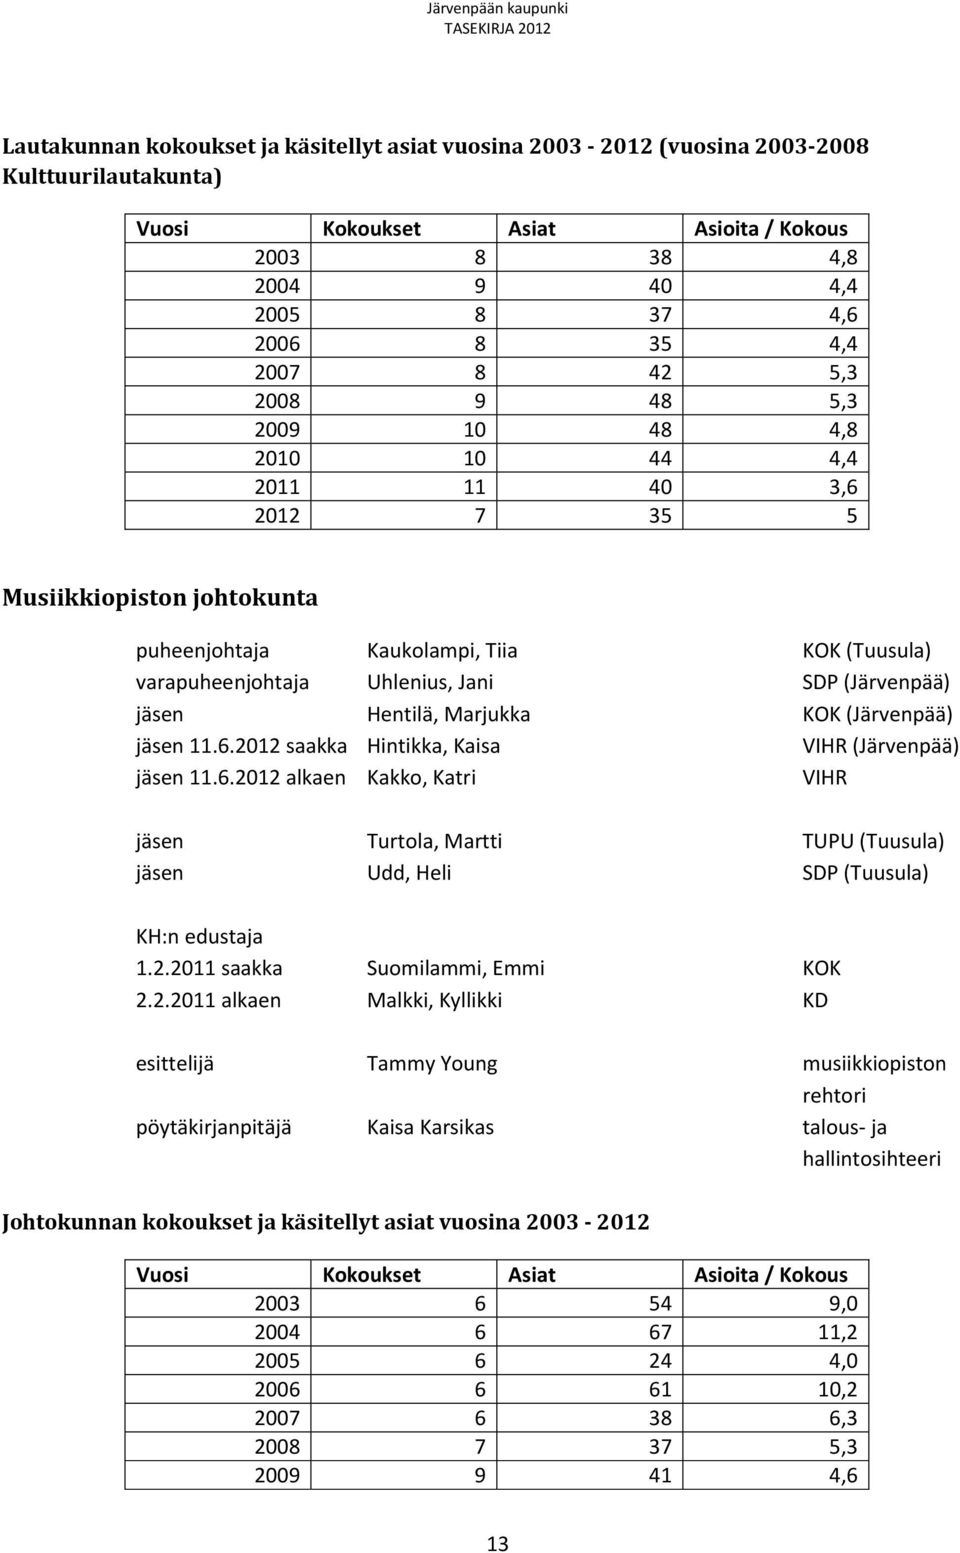 (Järvenpää) jäsen Hentilä, Marjukka KOK (Järvenpää) jäsen 11.6.2012 saakka Hintikka, Kaisa VIHR (Järvenpää) jäsen 11.6.2012 alkaen Kakko, Katri VIHR jäsen Turtola, Martti TUPU (Tuusula) jäsen Udd, Heli SDP (Tuusula) KH:n edustaja 1.